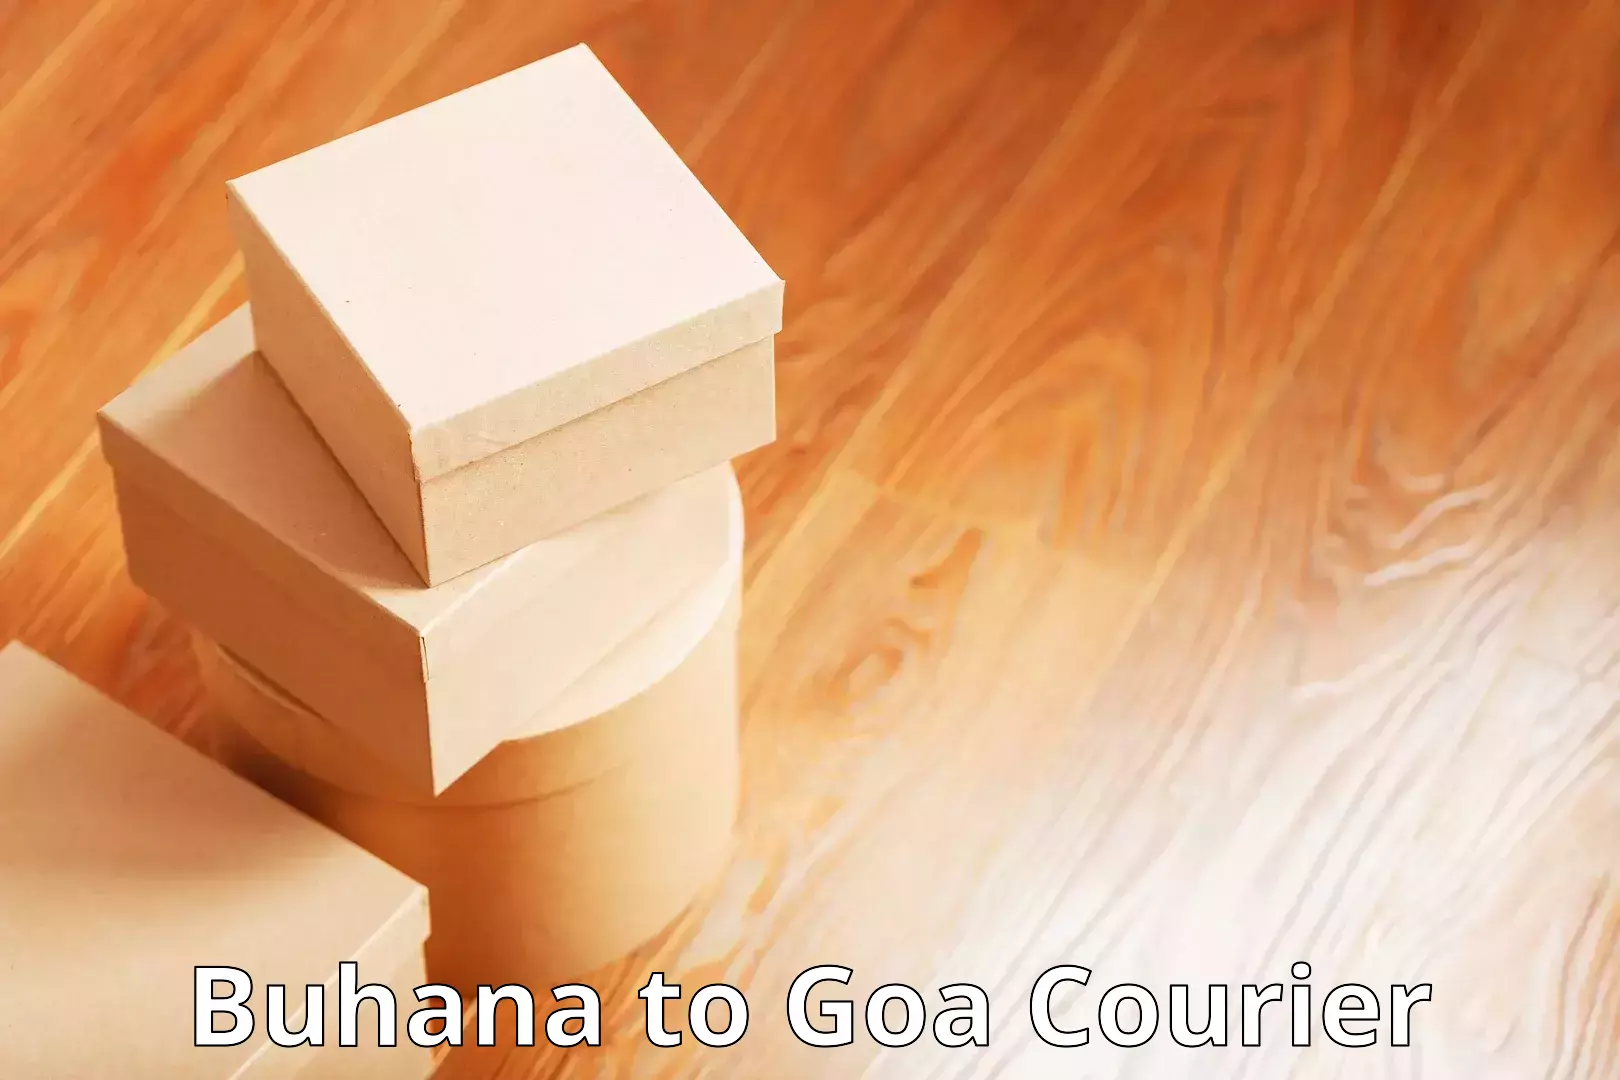 Efficient parcel service Buhana to NIT Goa